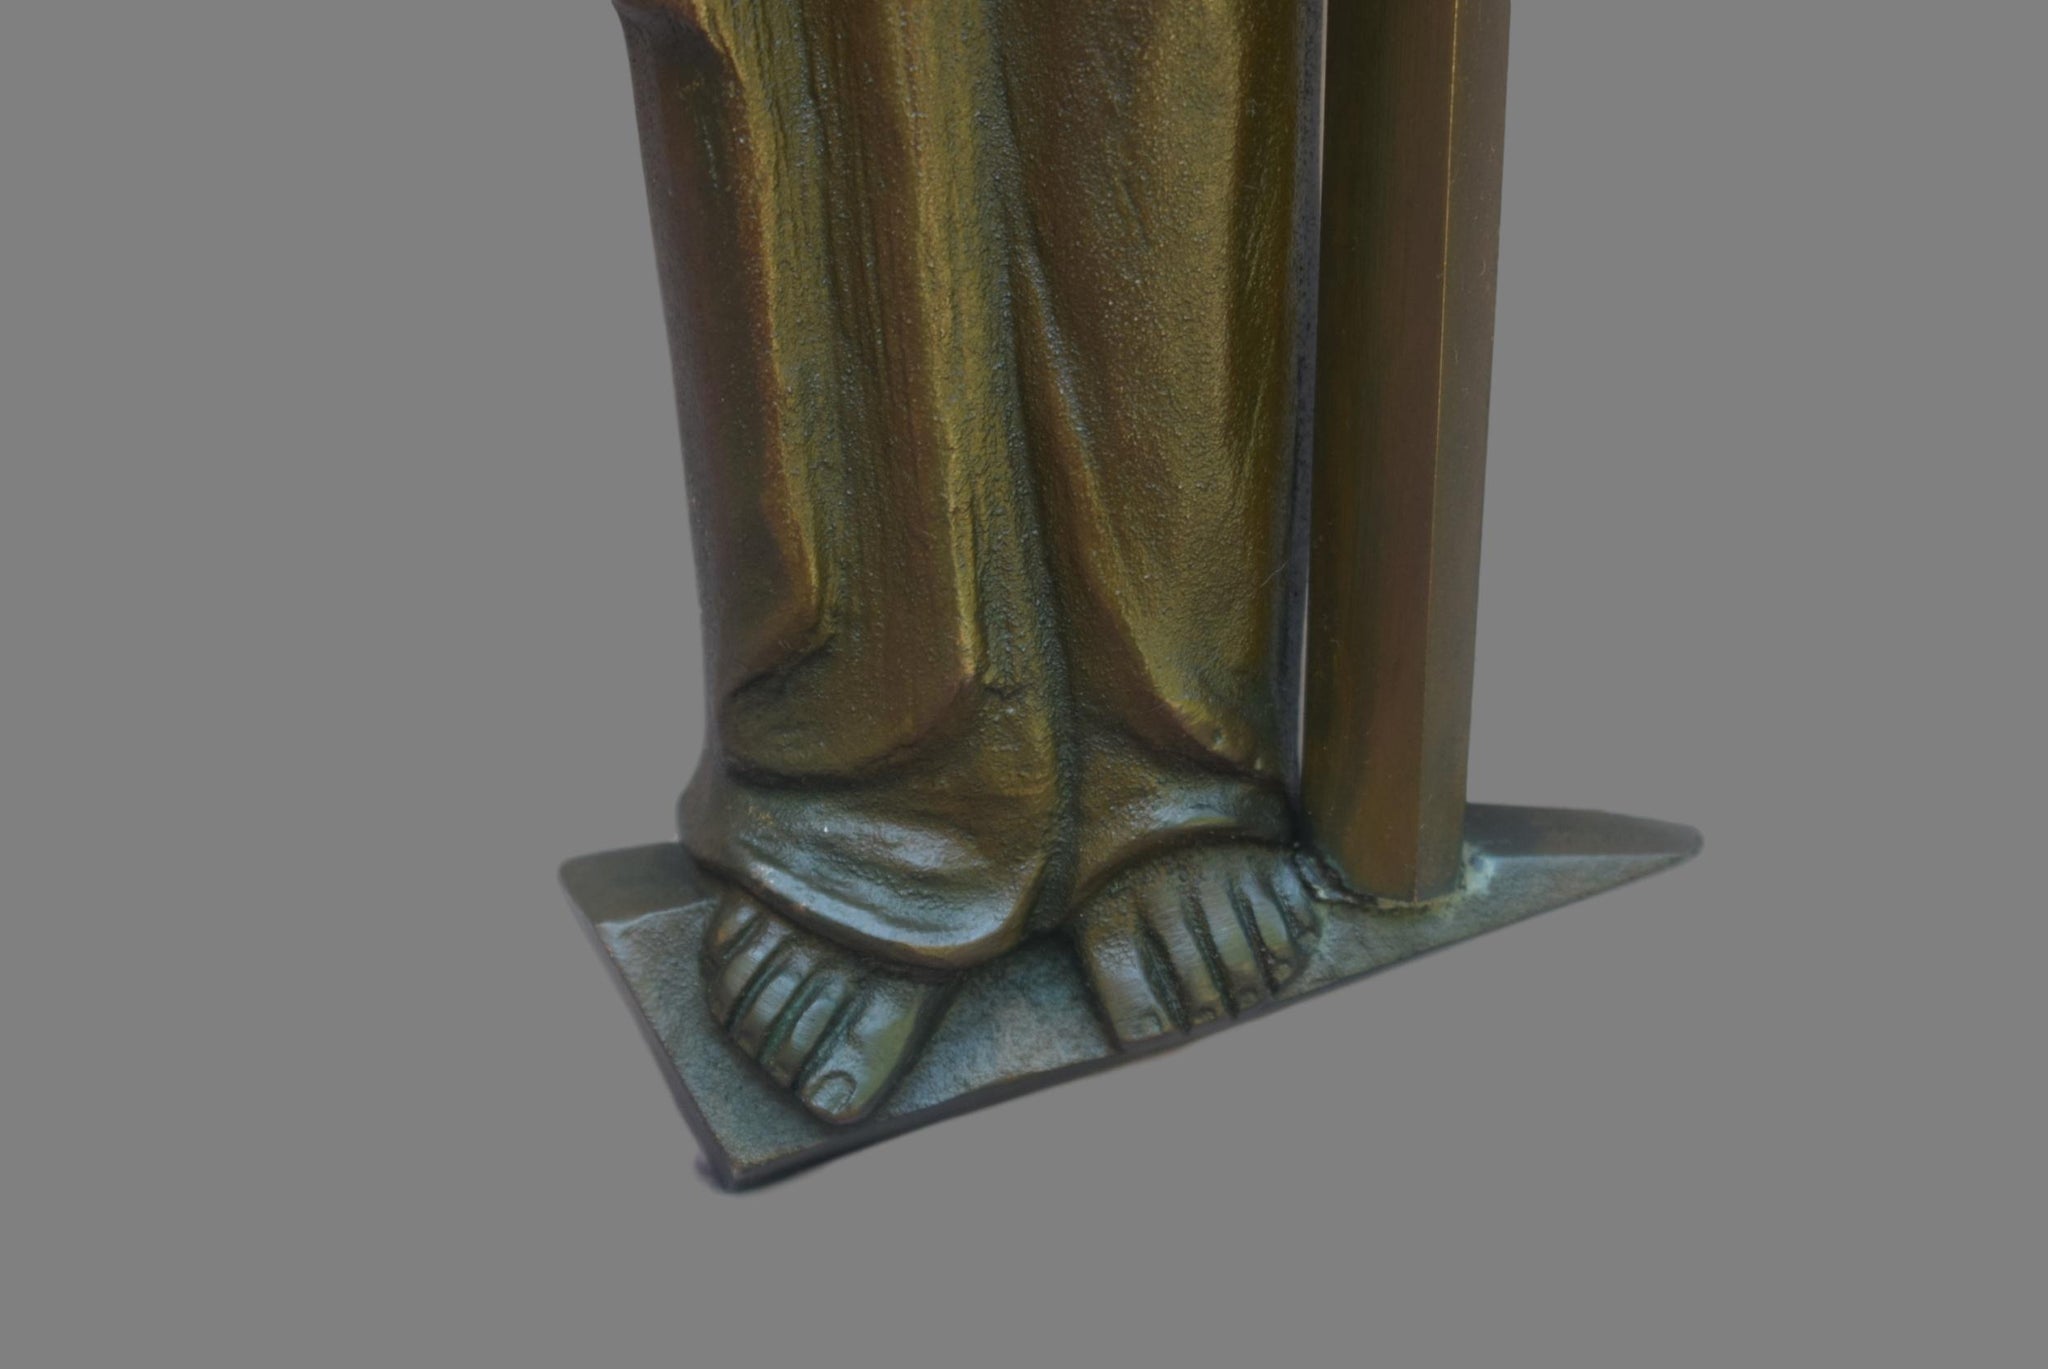 Art Deco Bronze Jesus Statue - Charmantiques